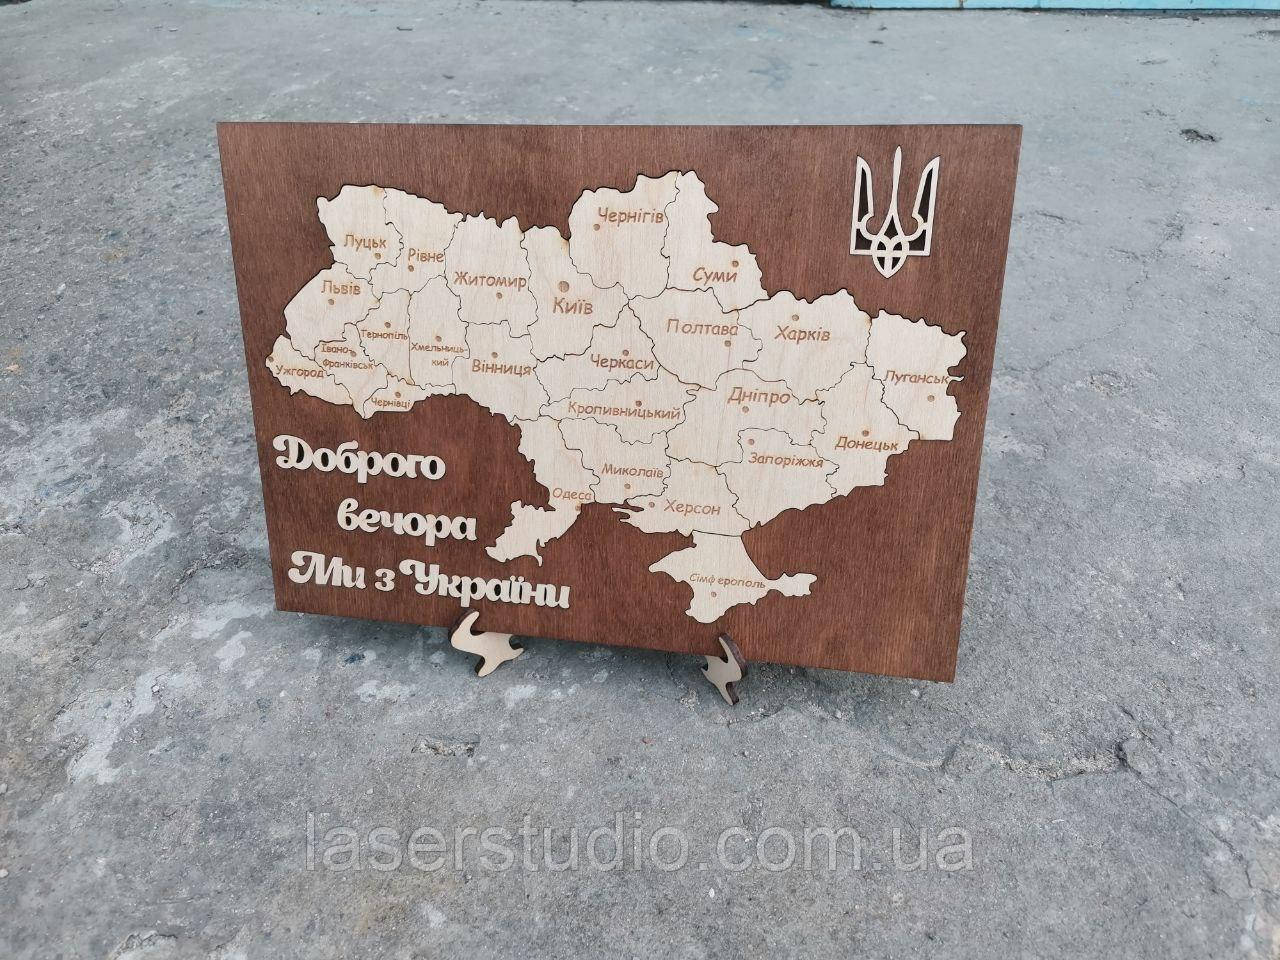 Пазл карта України з написом "Доброго вечора ми з України" + герб на підставці (Червоно-коричнева) 30*21см